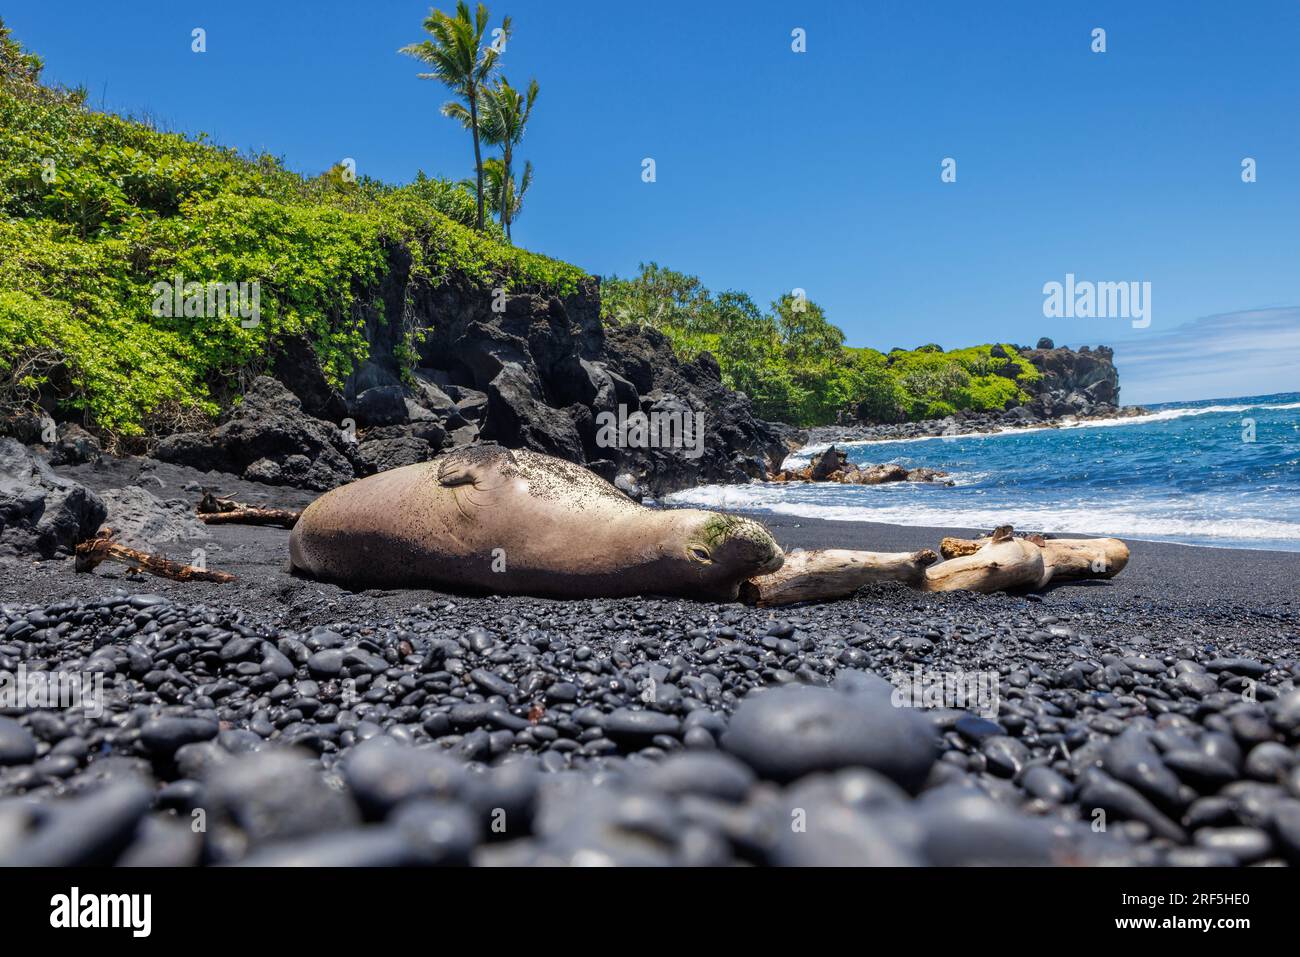 Questa foca monaca hawaiana, Neomonachus schauinslandi, (endemica e in via di estinzione) è stata fotografata sulla spiaggia di sabbia nera del Wainapanapa State Park, Maui, Foto Stock